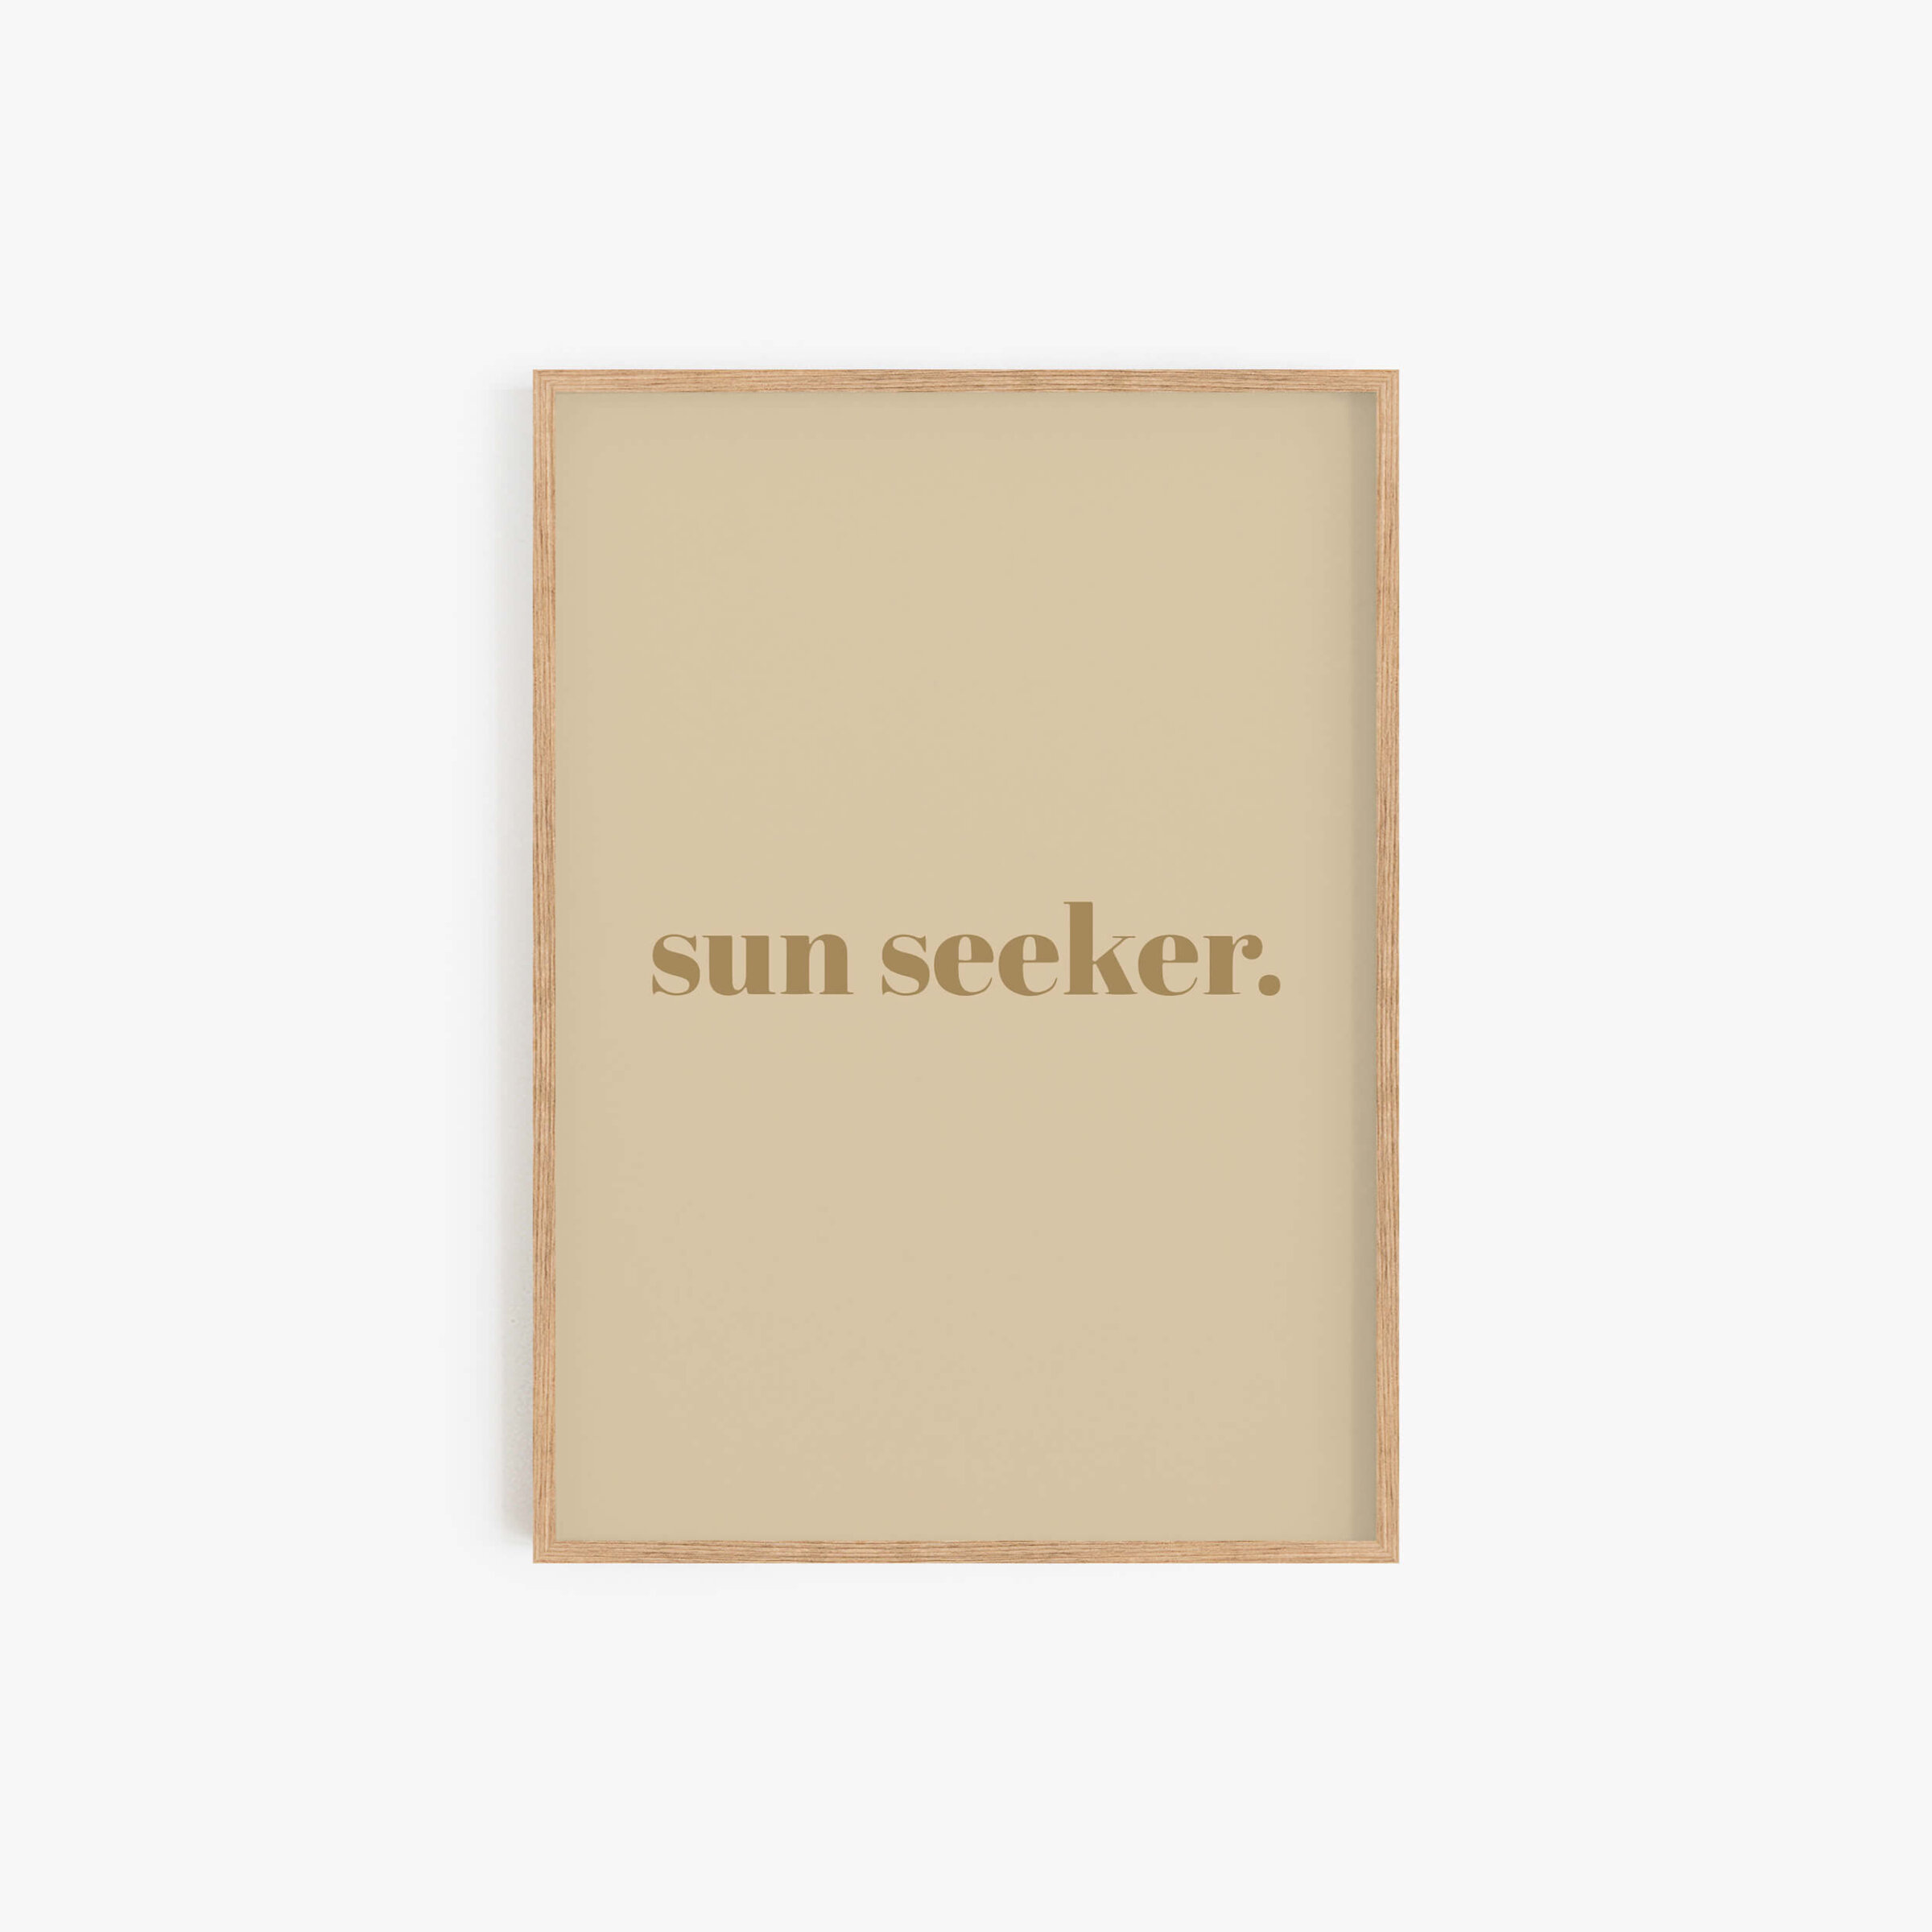 sun-seeker-print